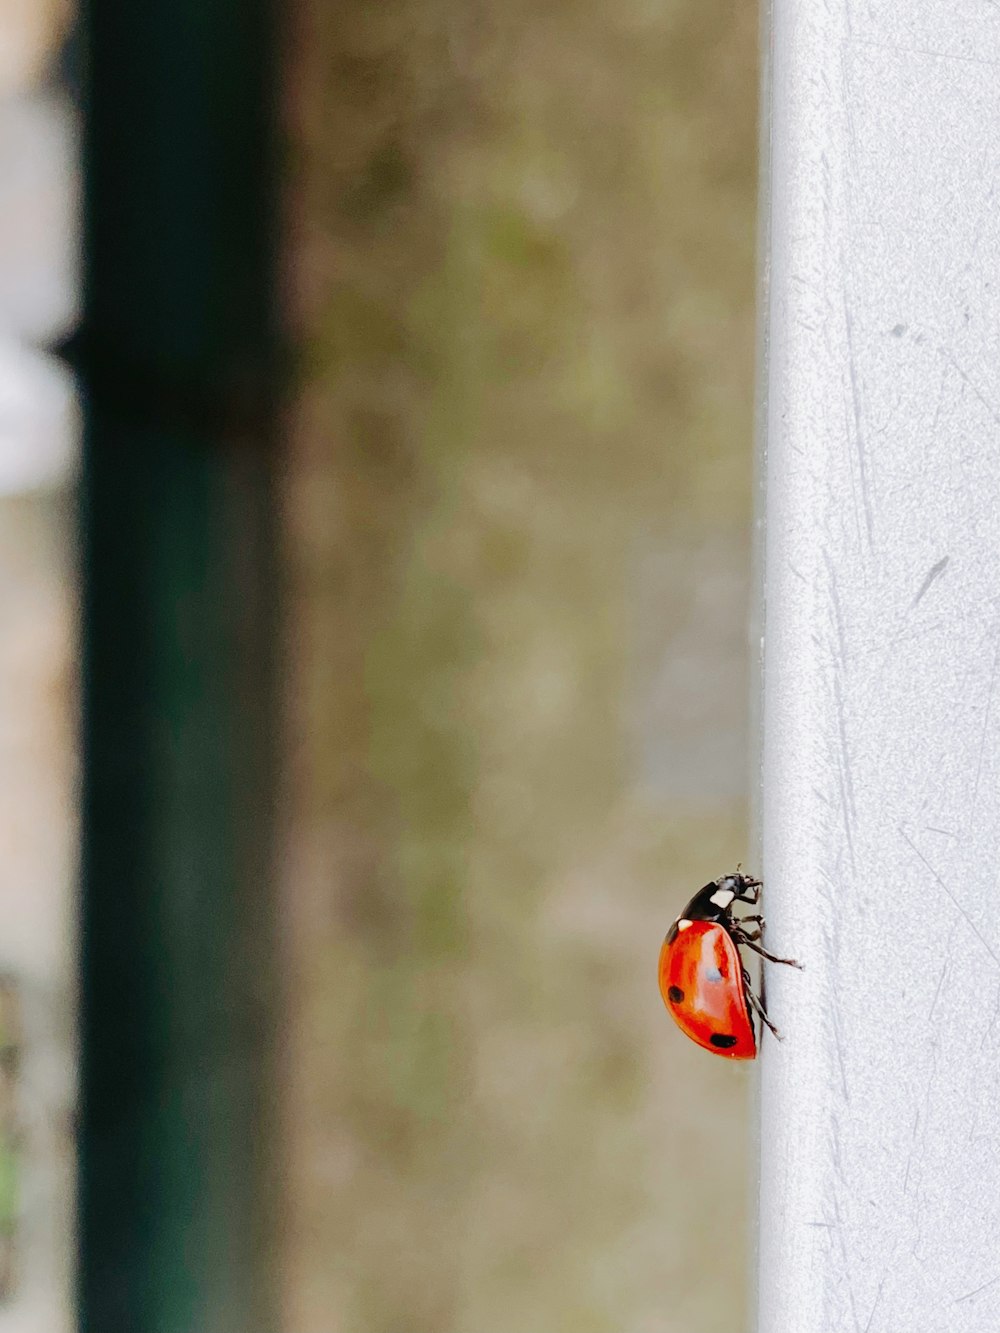 black and orange ladybug on white concrete wall during daytime